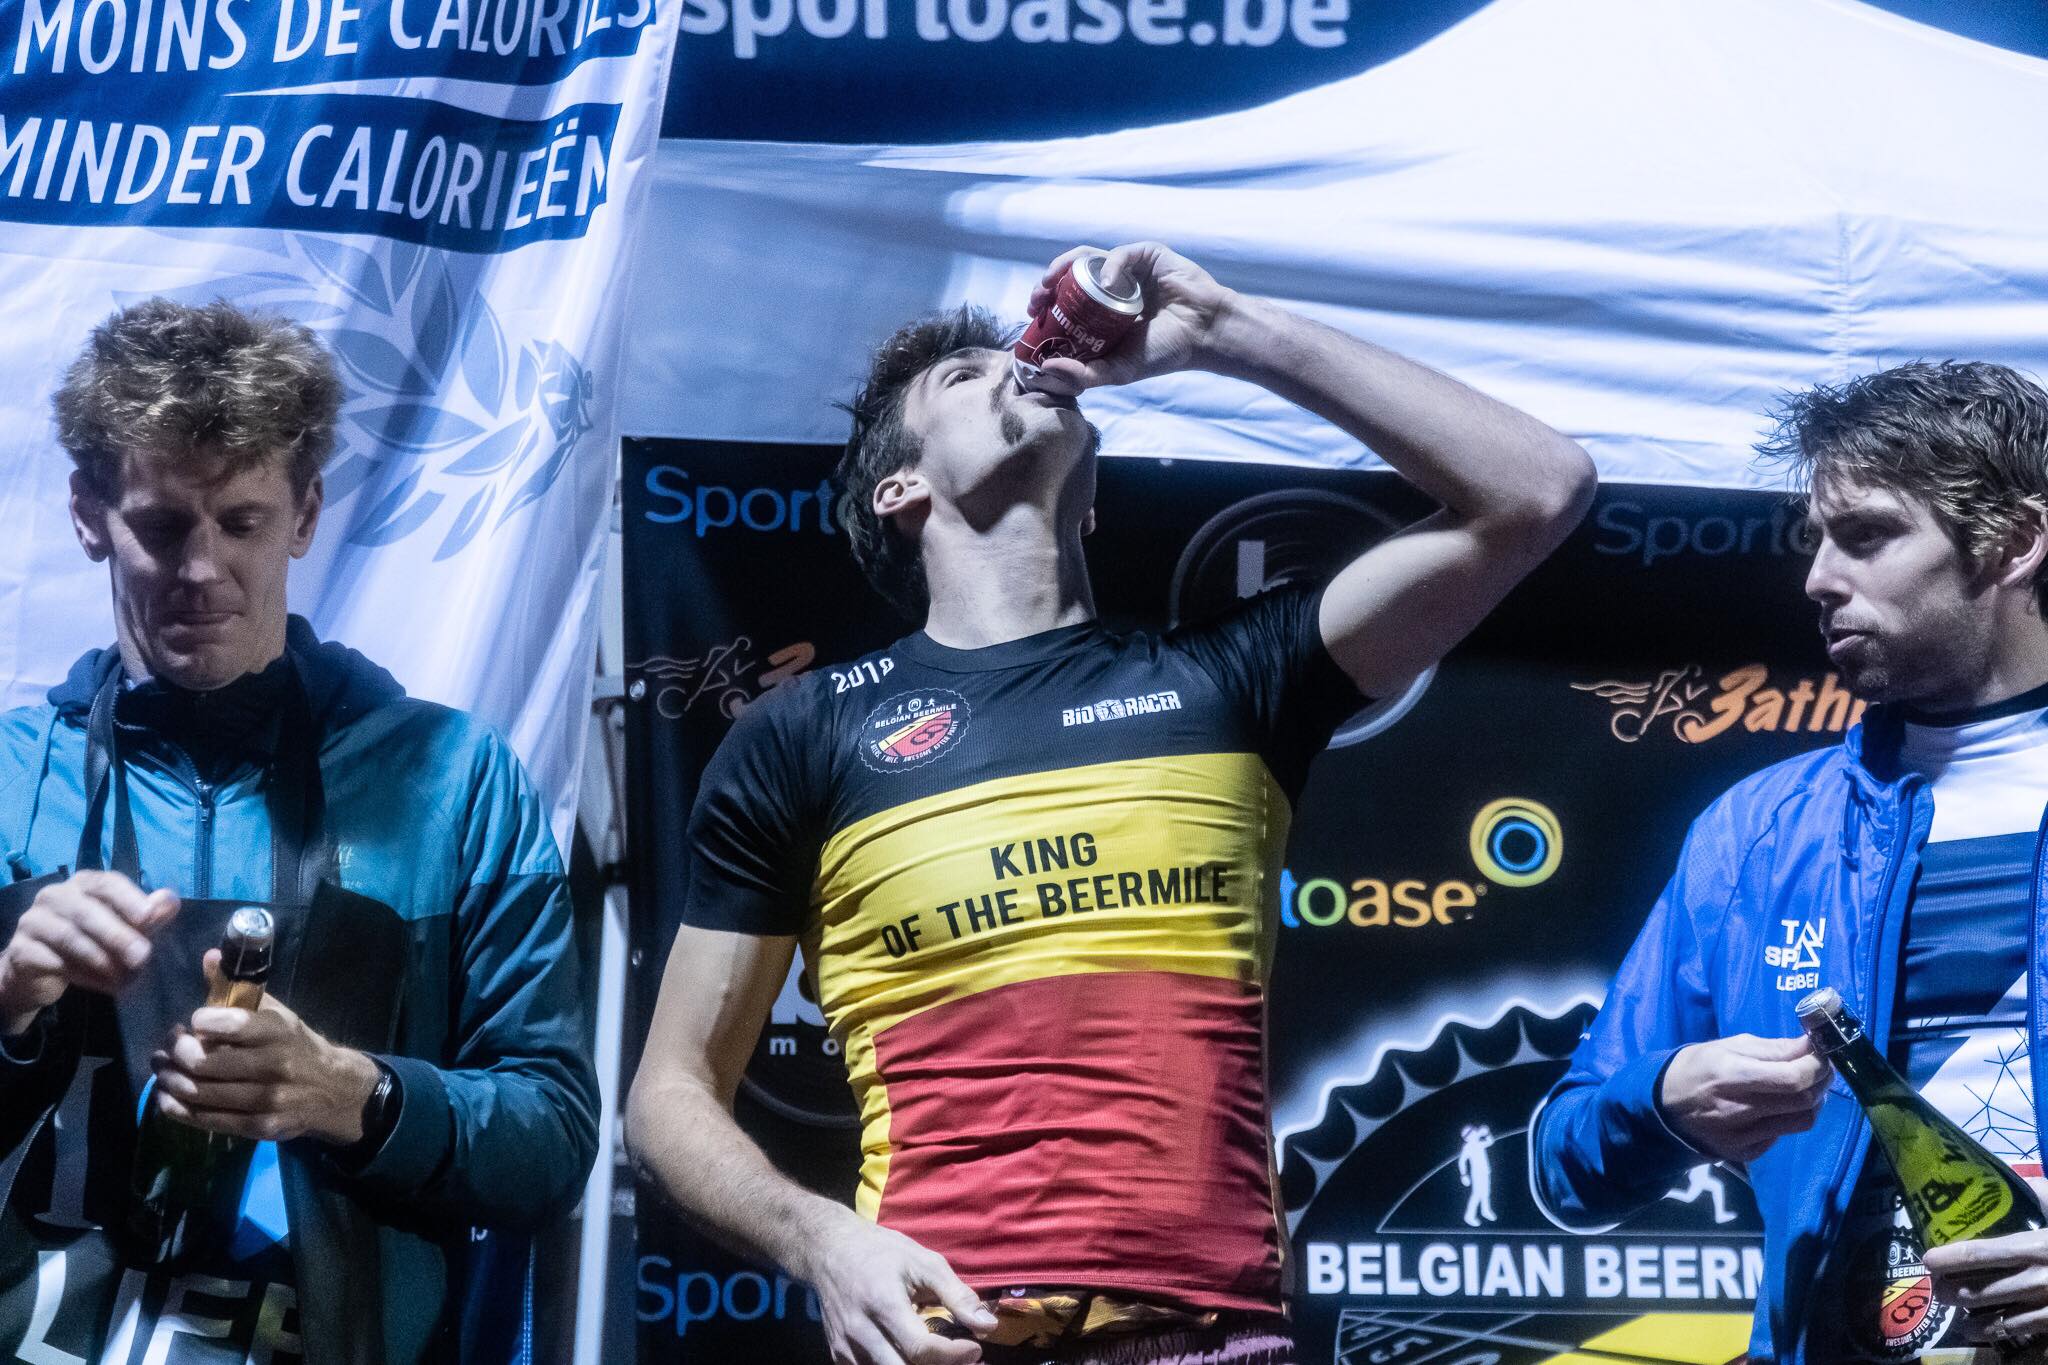 Antonio Hernaert drinkt er nog eentje op zijn overwinning (foto: 3athlon.be/Gert-Jan D'haene)